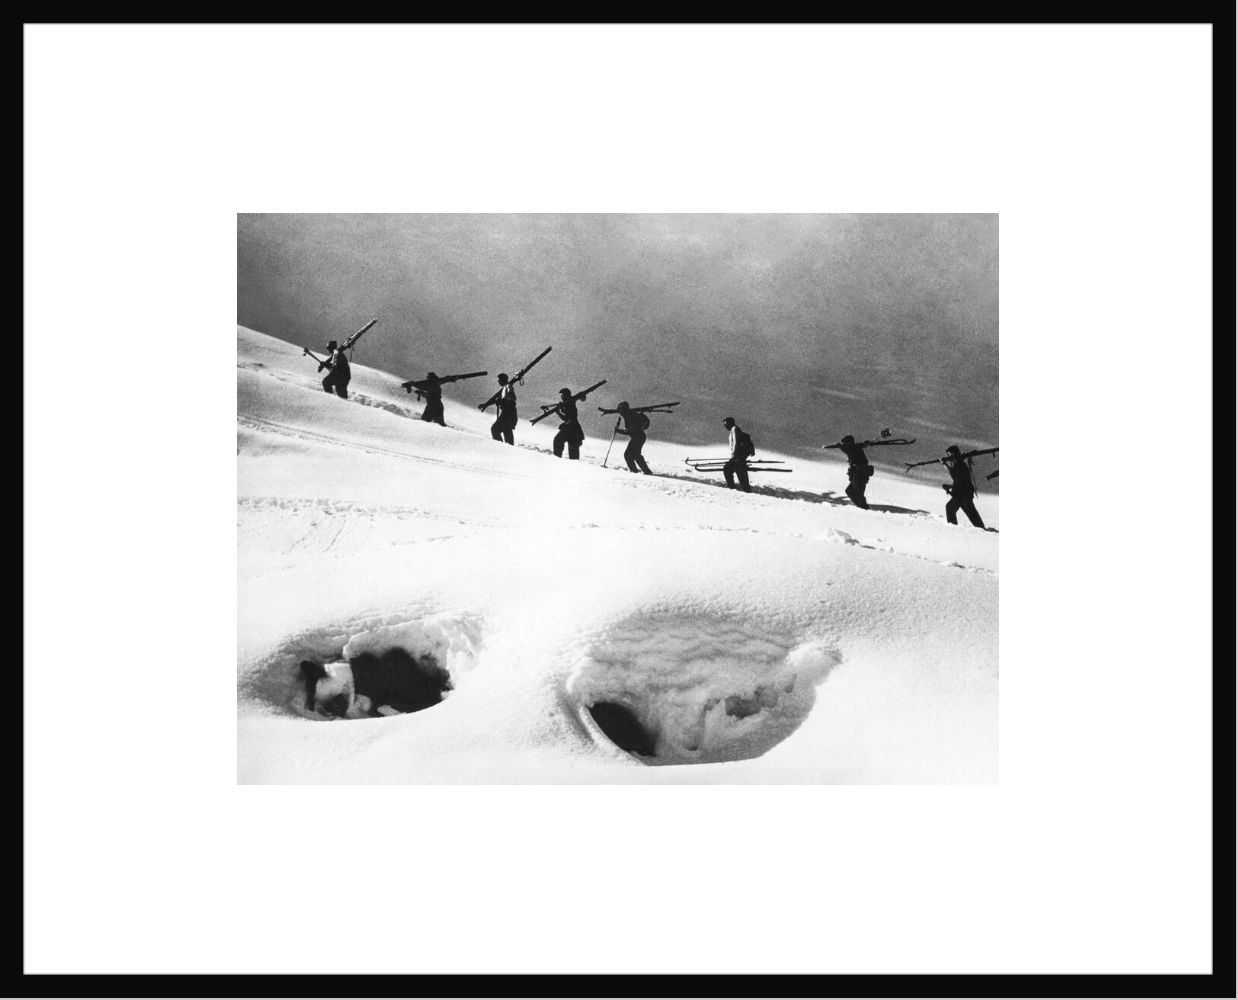 Fotografía Skieurs en file indienne 1954 -  GAMMA AGENCY - Cuadro de pintura